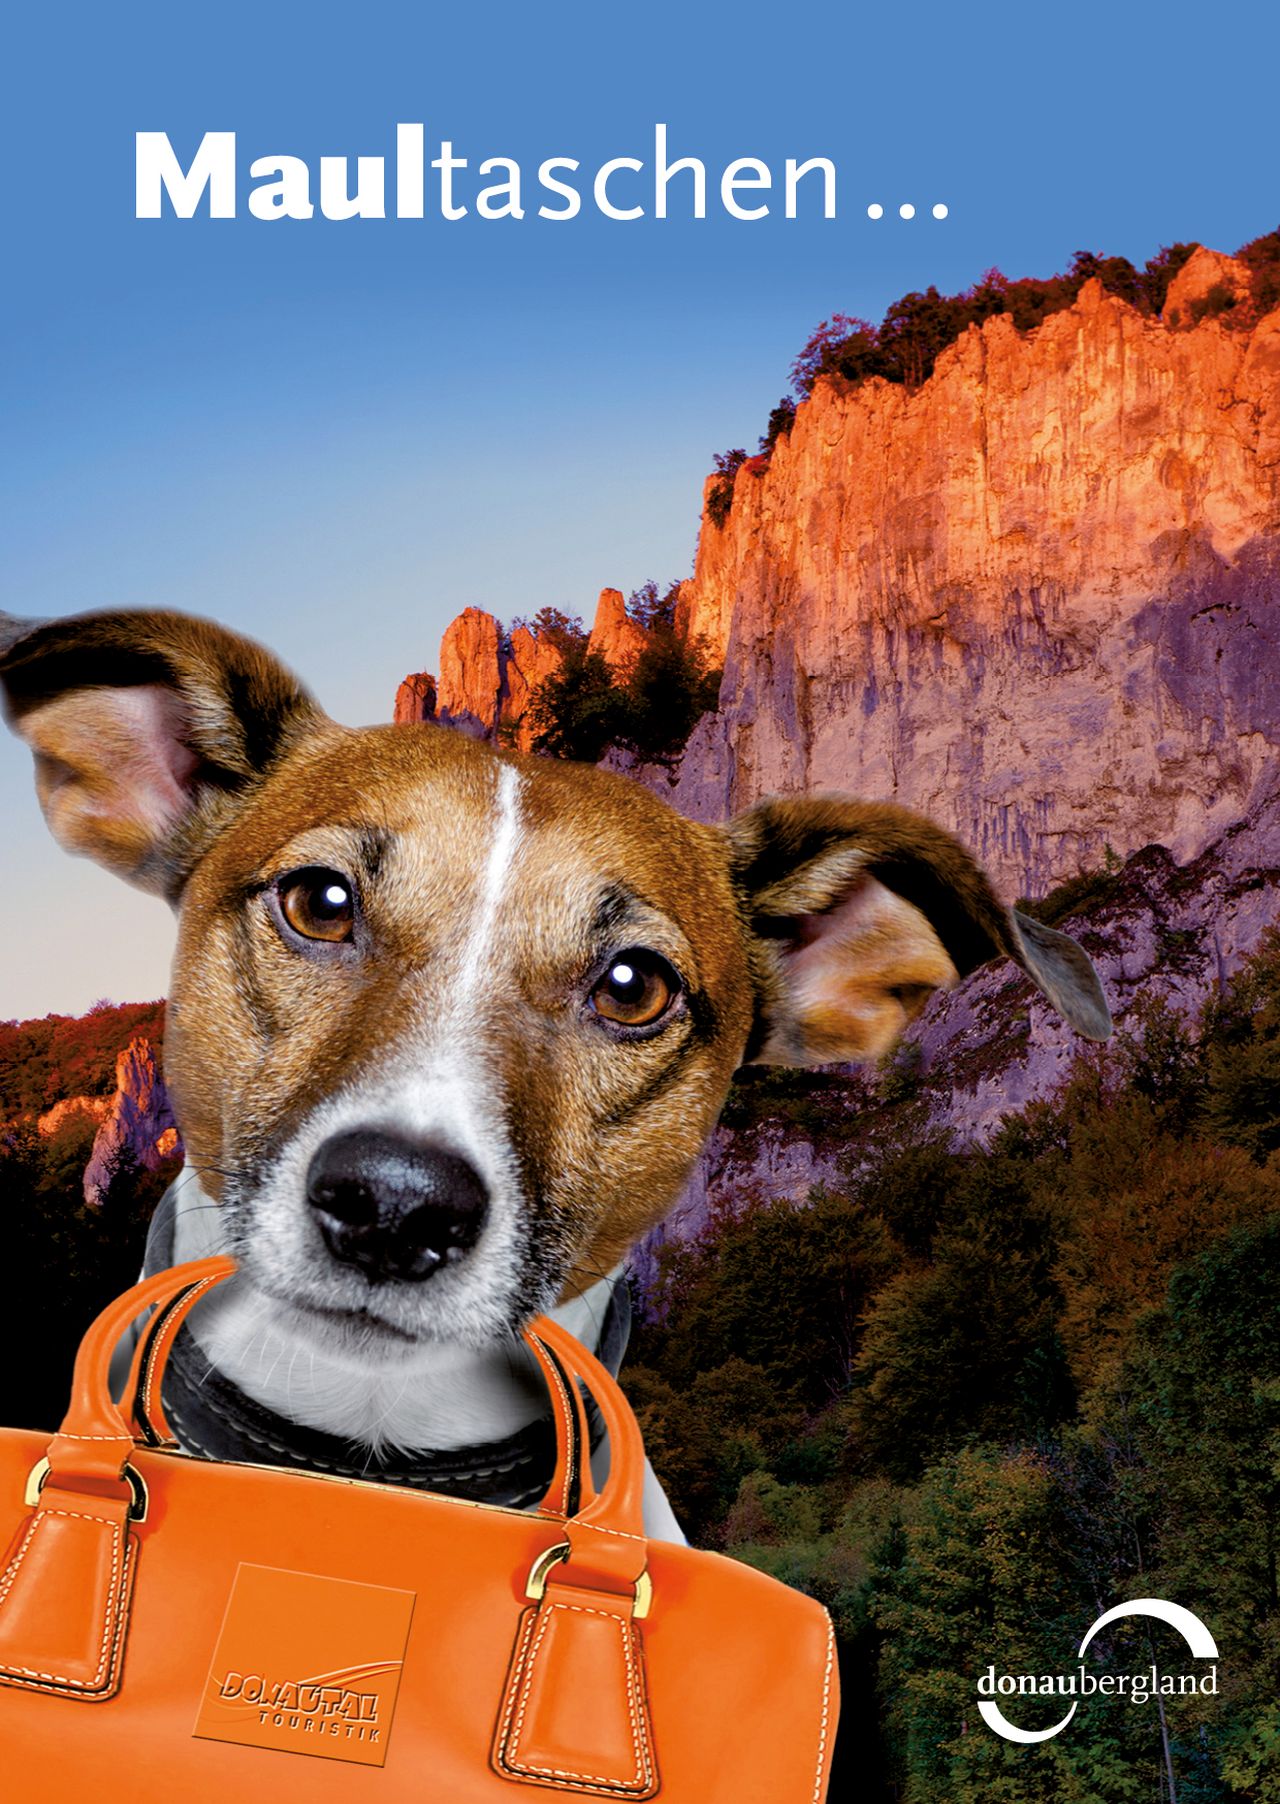 Donaubergland Postkartenmotiv mit Hund vor einem Felsen, mit einer orangenen Tasche im Maul.